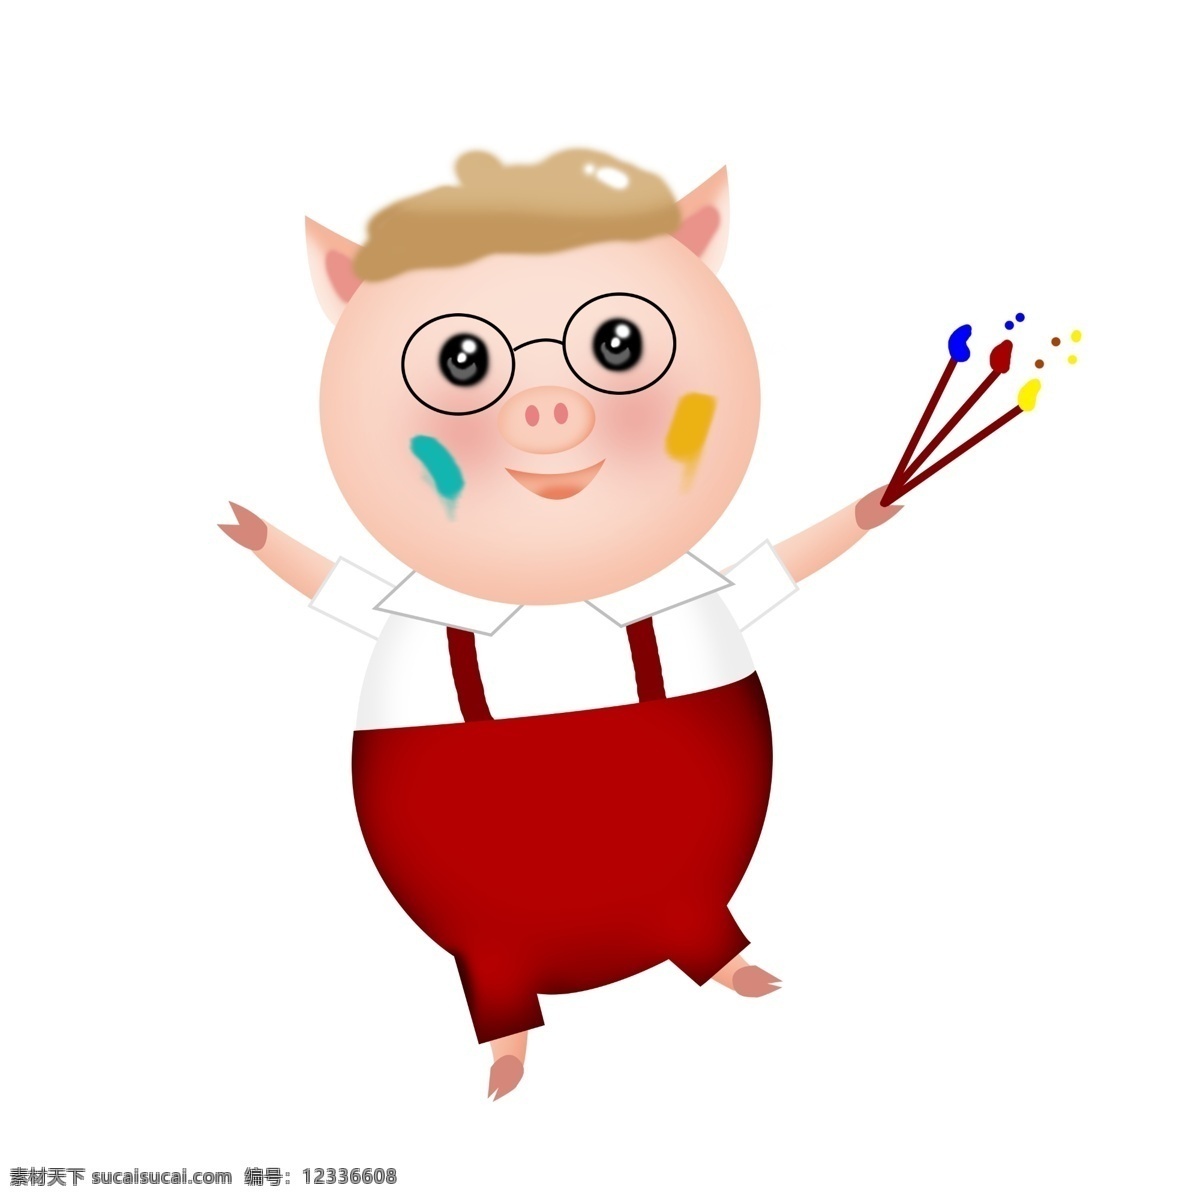 文艺 猪 新年 画家 插画 app 页面 可爱 猪年 文艺猪 画家猪 绘画的猪 app页面 首页 ui ps 背带裤 镜框猪 淘宝 2019